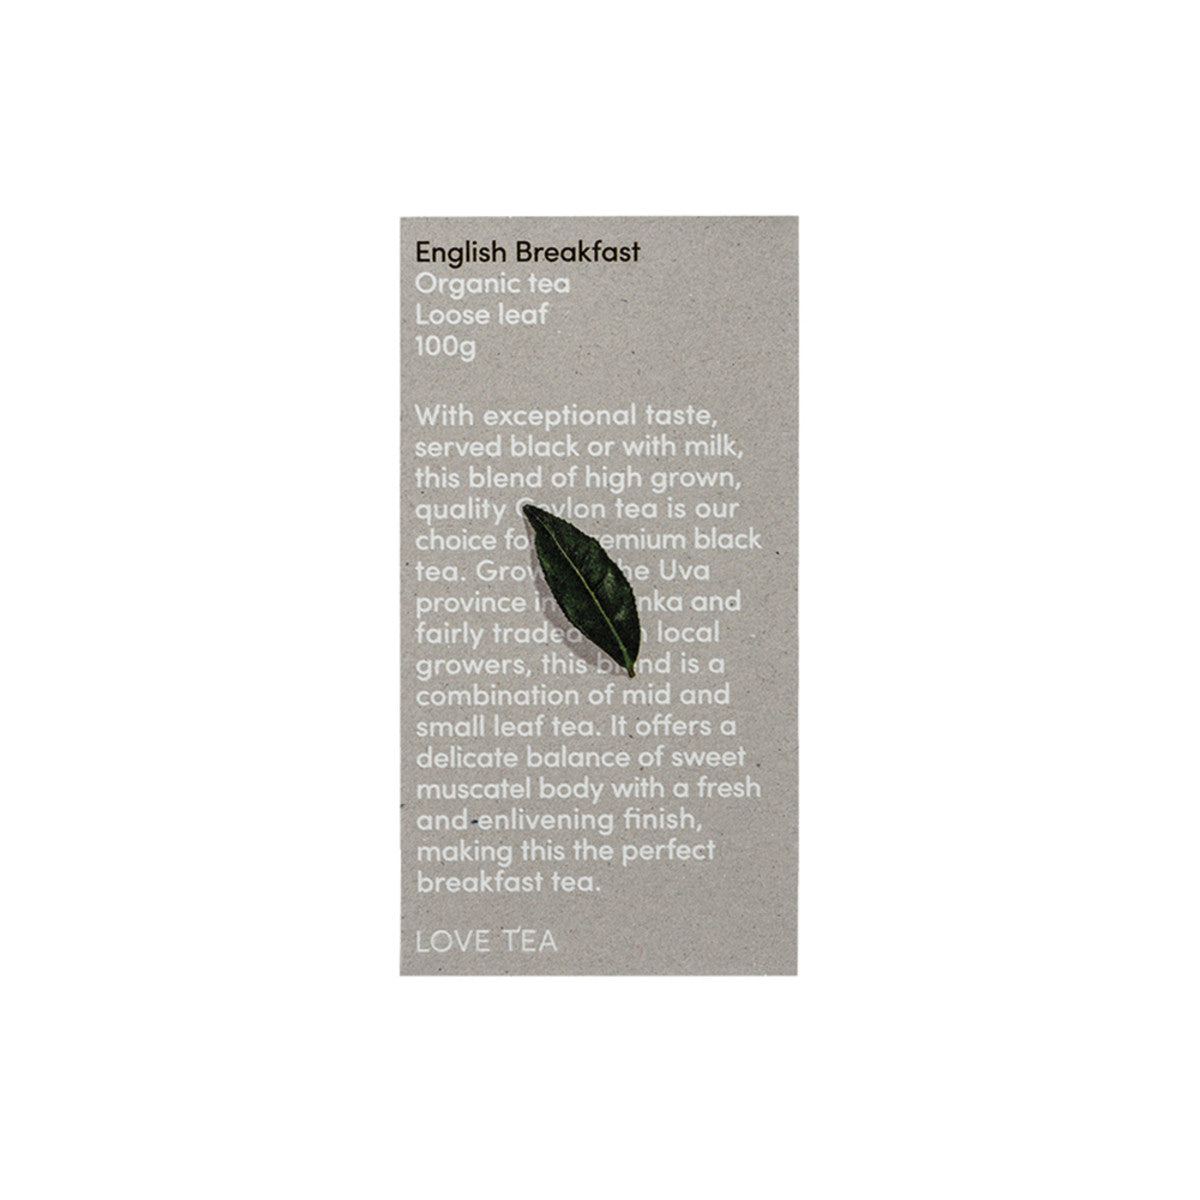 Love Tea - Organic English Breakfast Loose Leaf